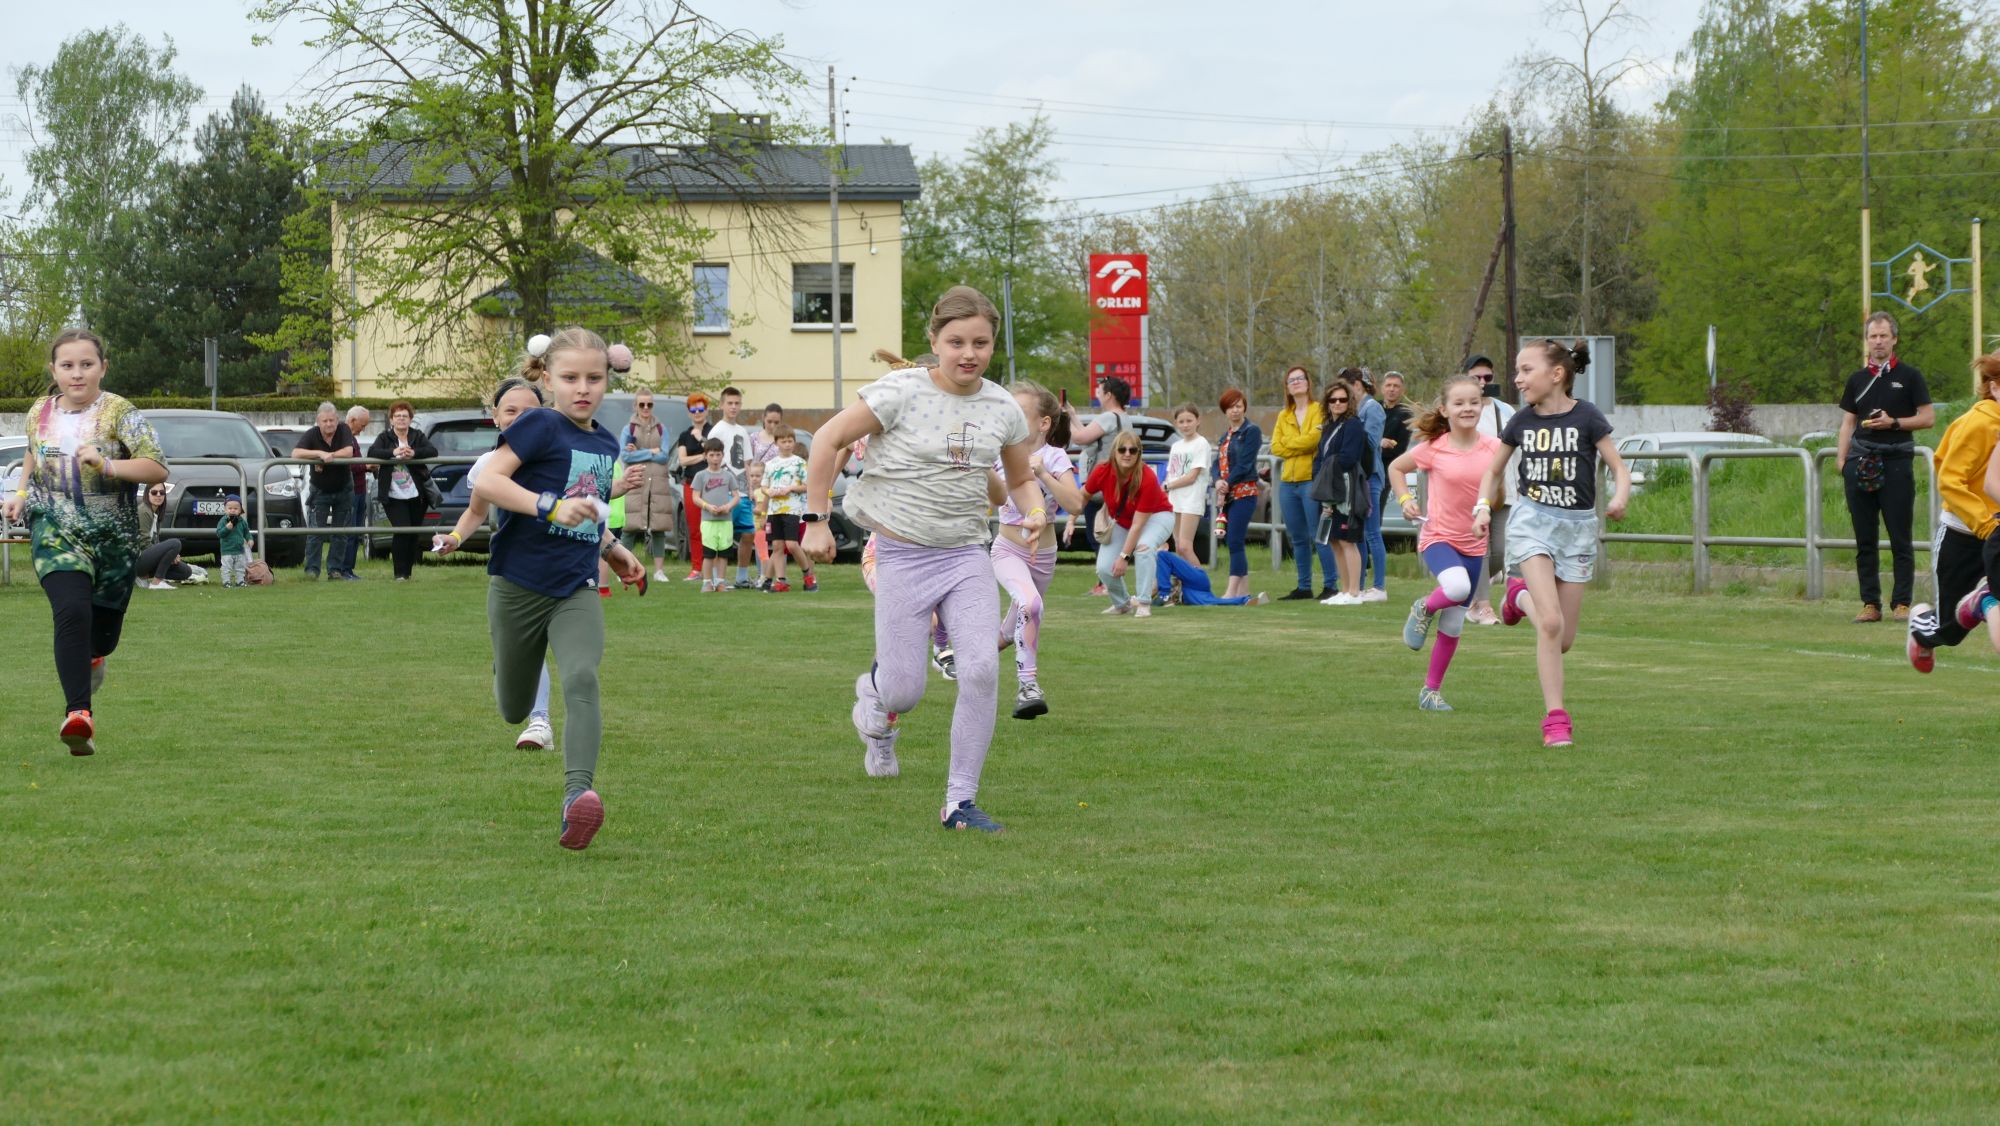 Nowością w tym roku był bieg dla dzieci. Do udziału zgłosiło się ponad 50 młodych biegaczy